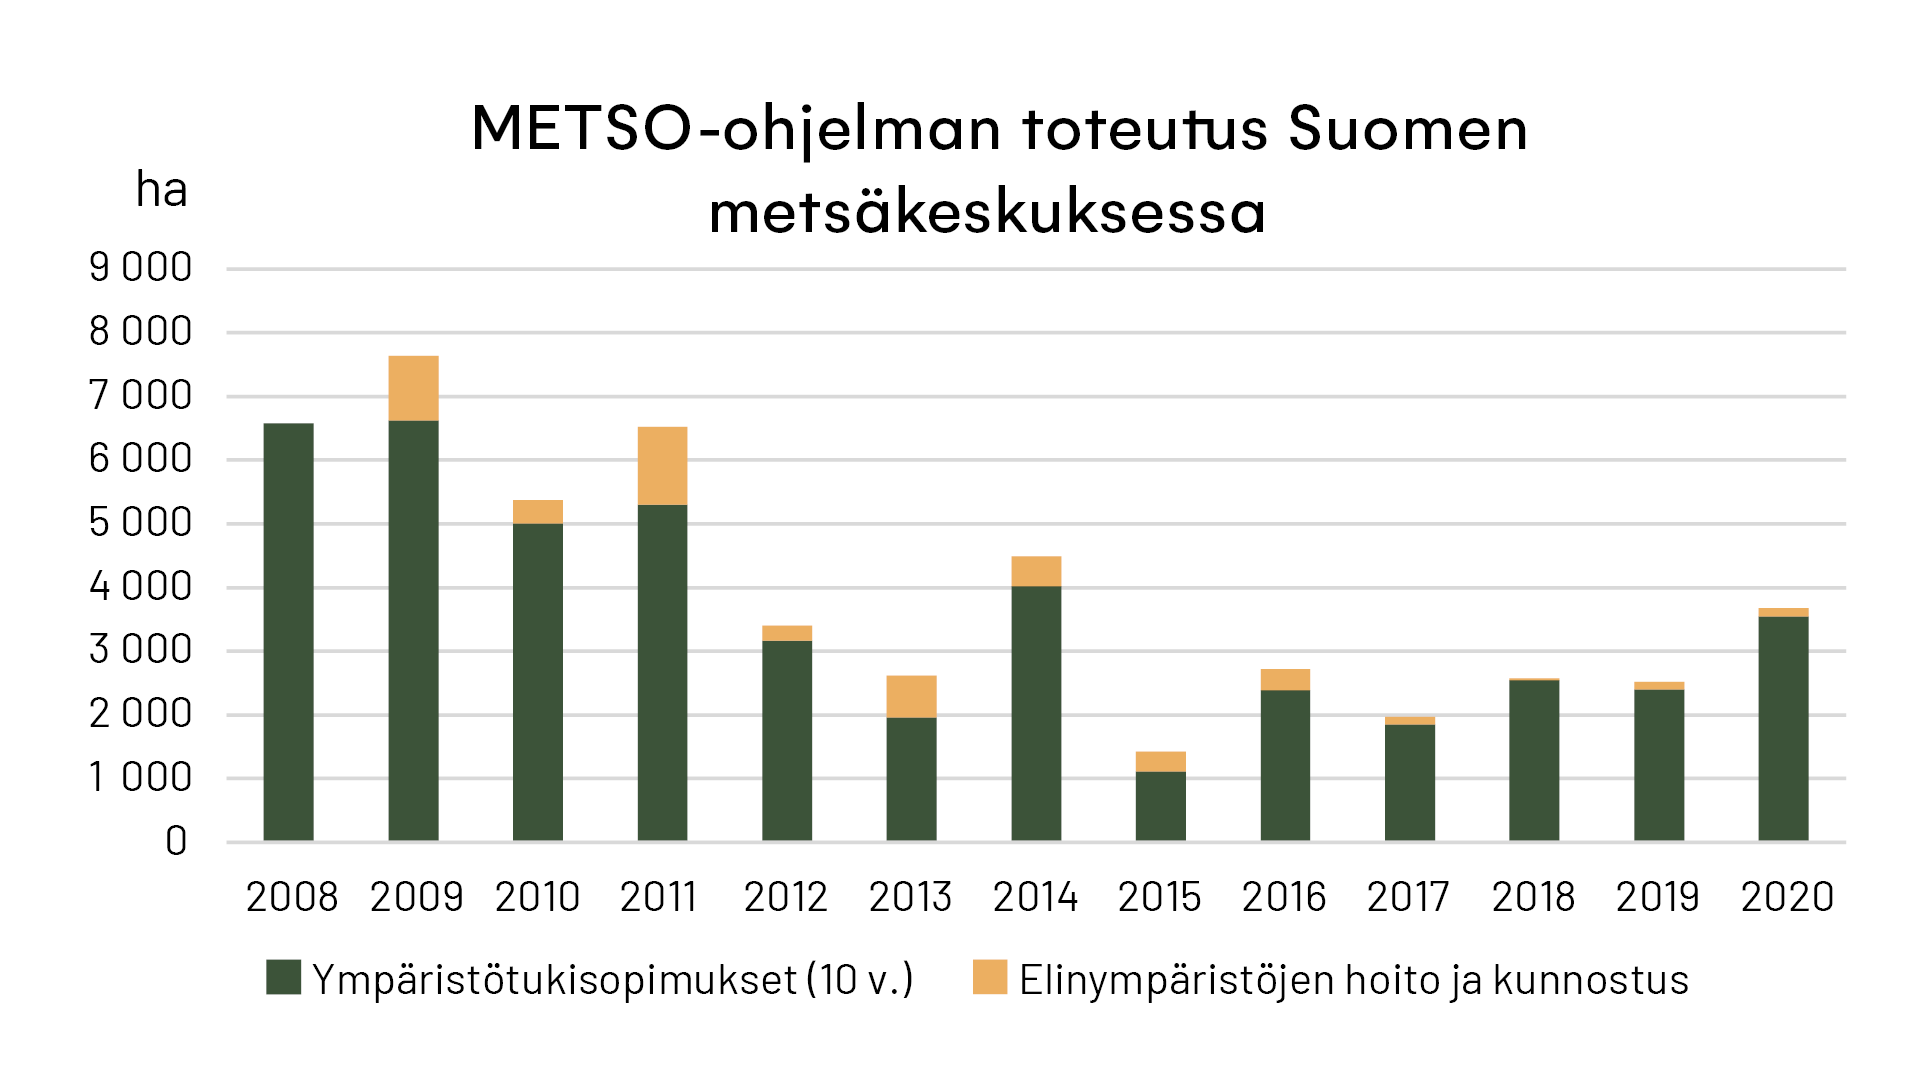 Pylväsdiagrammi, jossa näkyy miten paljon Suomen metsäkeskus on toteuttunut METSO-ohjelmaa vuosina 2008-2020.